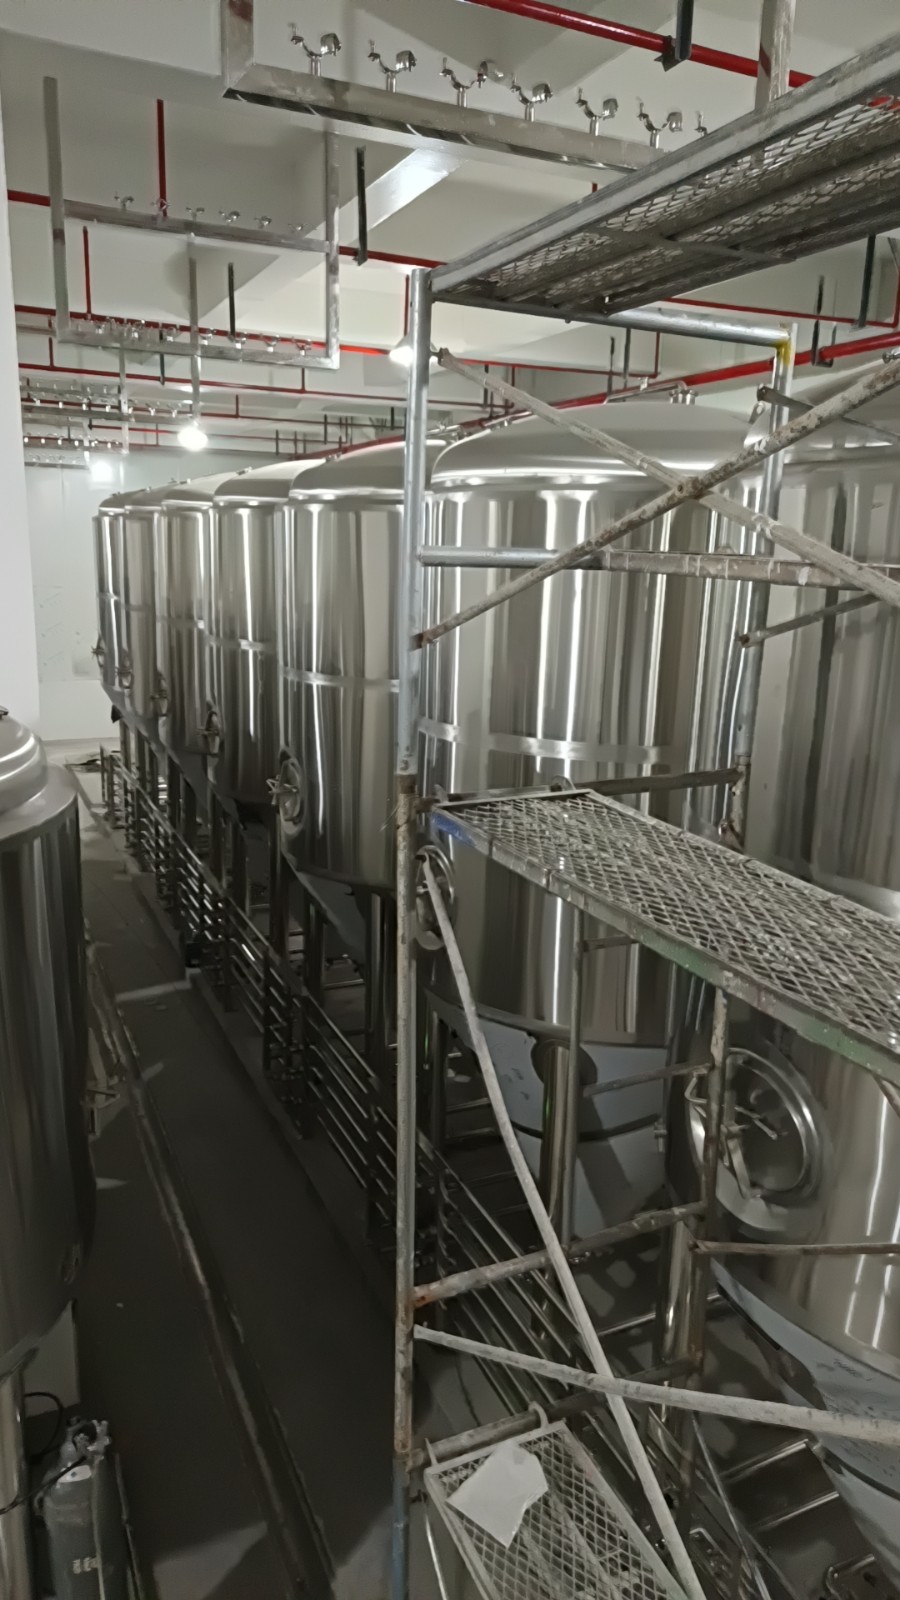 九寨沟大型精酿啤酒设备生产线供应厂家